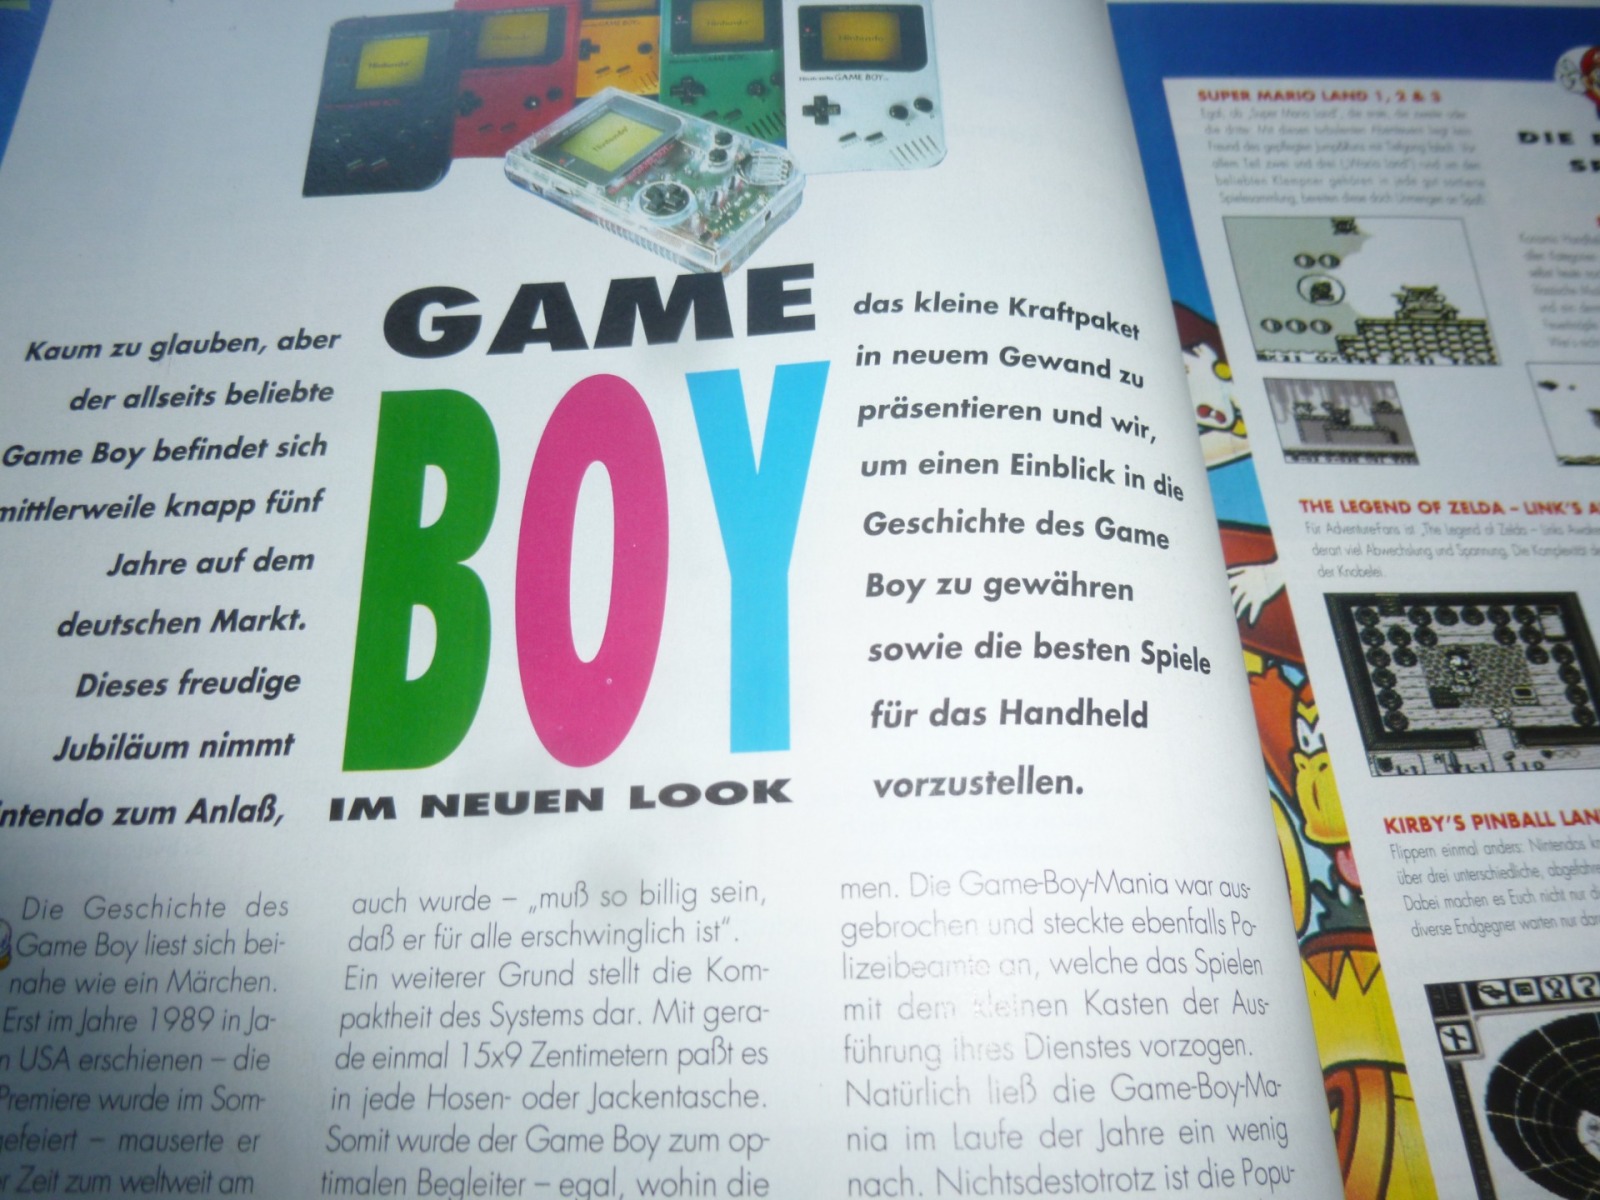 TOTAL Das unabhängige Magazin - 100% Nintendo - Ausgabe 5/95 1995 17